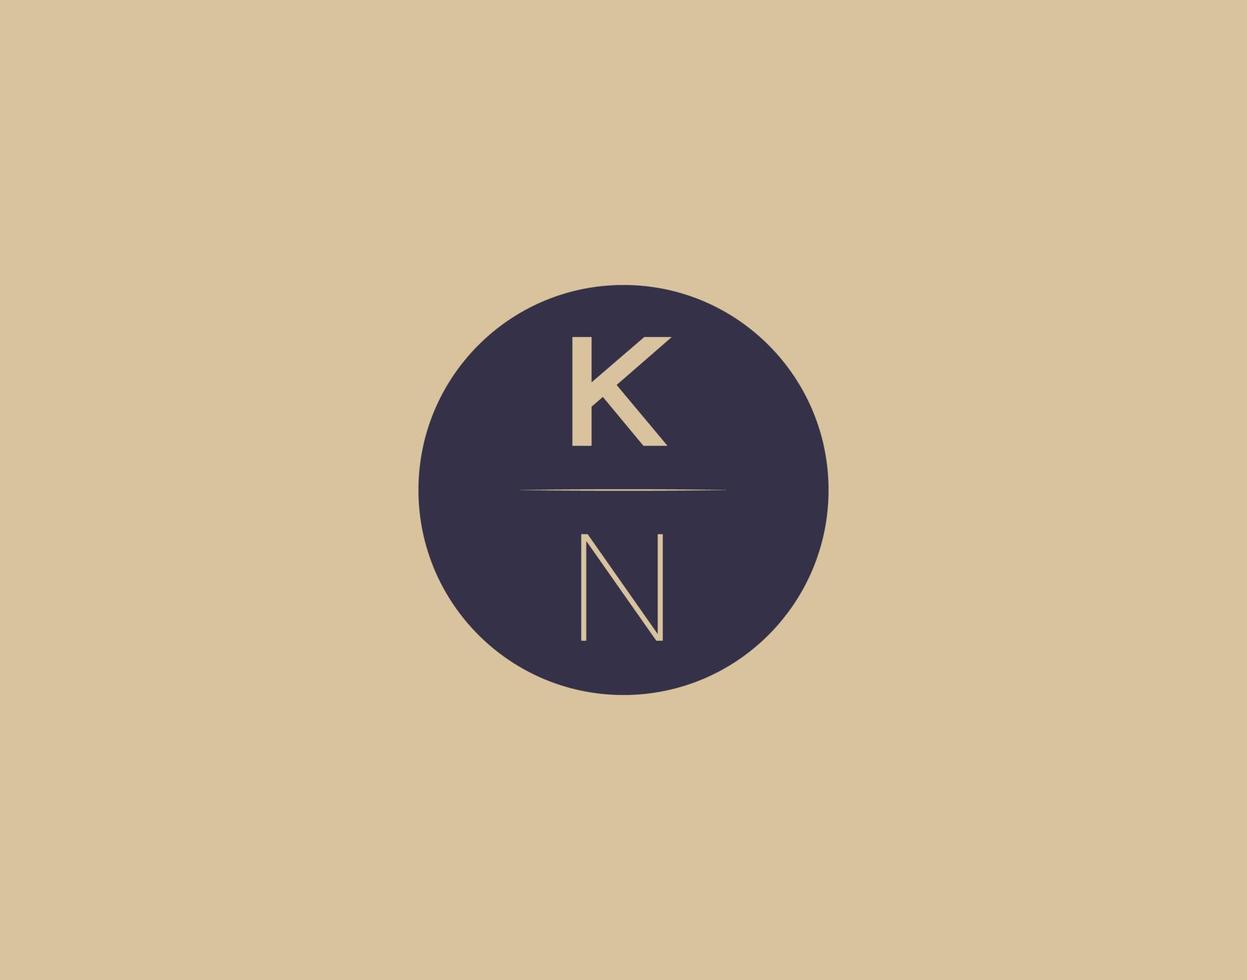 imagens vetoriais de design de logotipo moderno e elegante da carta kn vetor